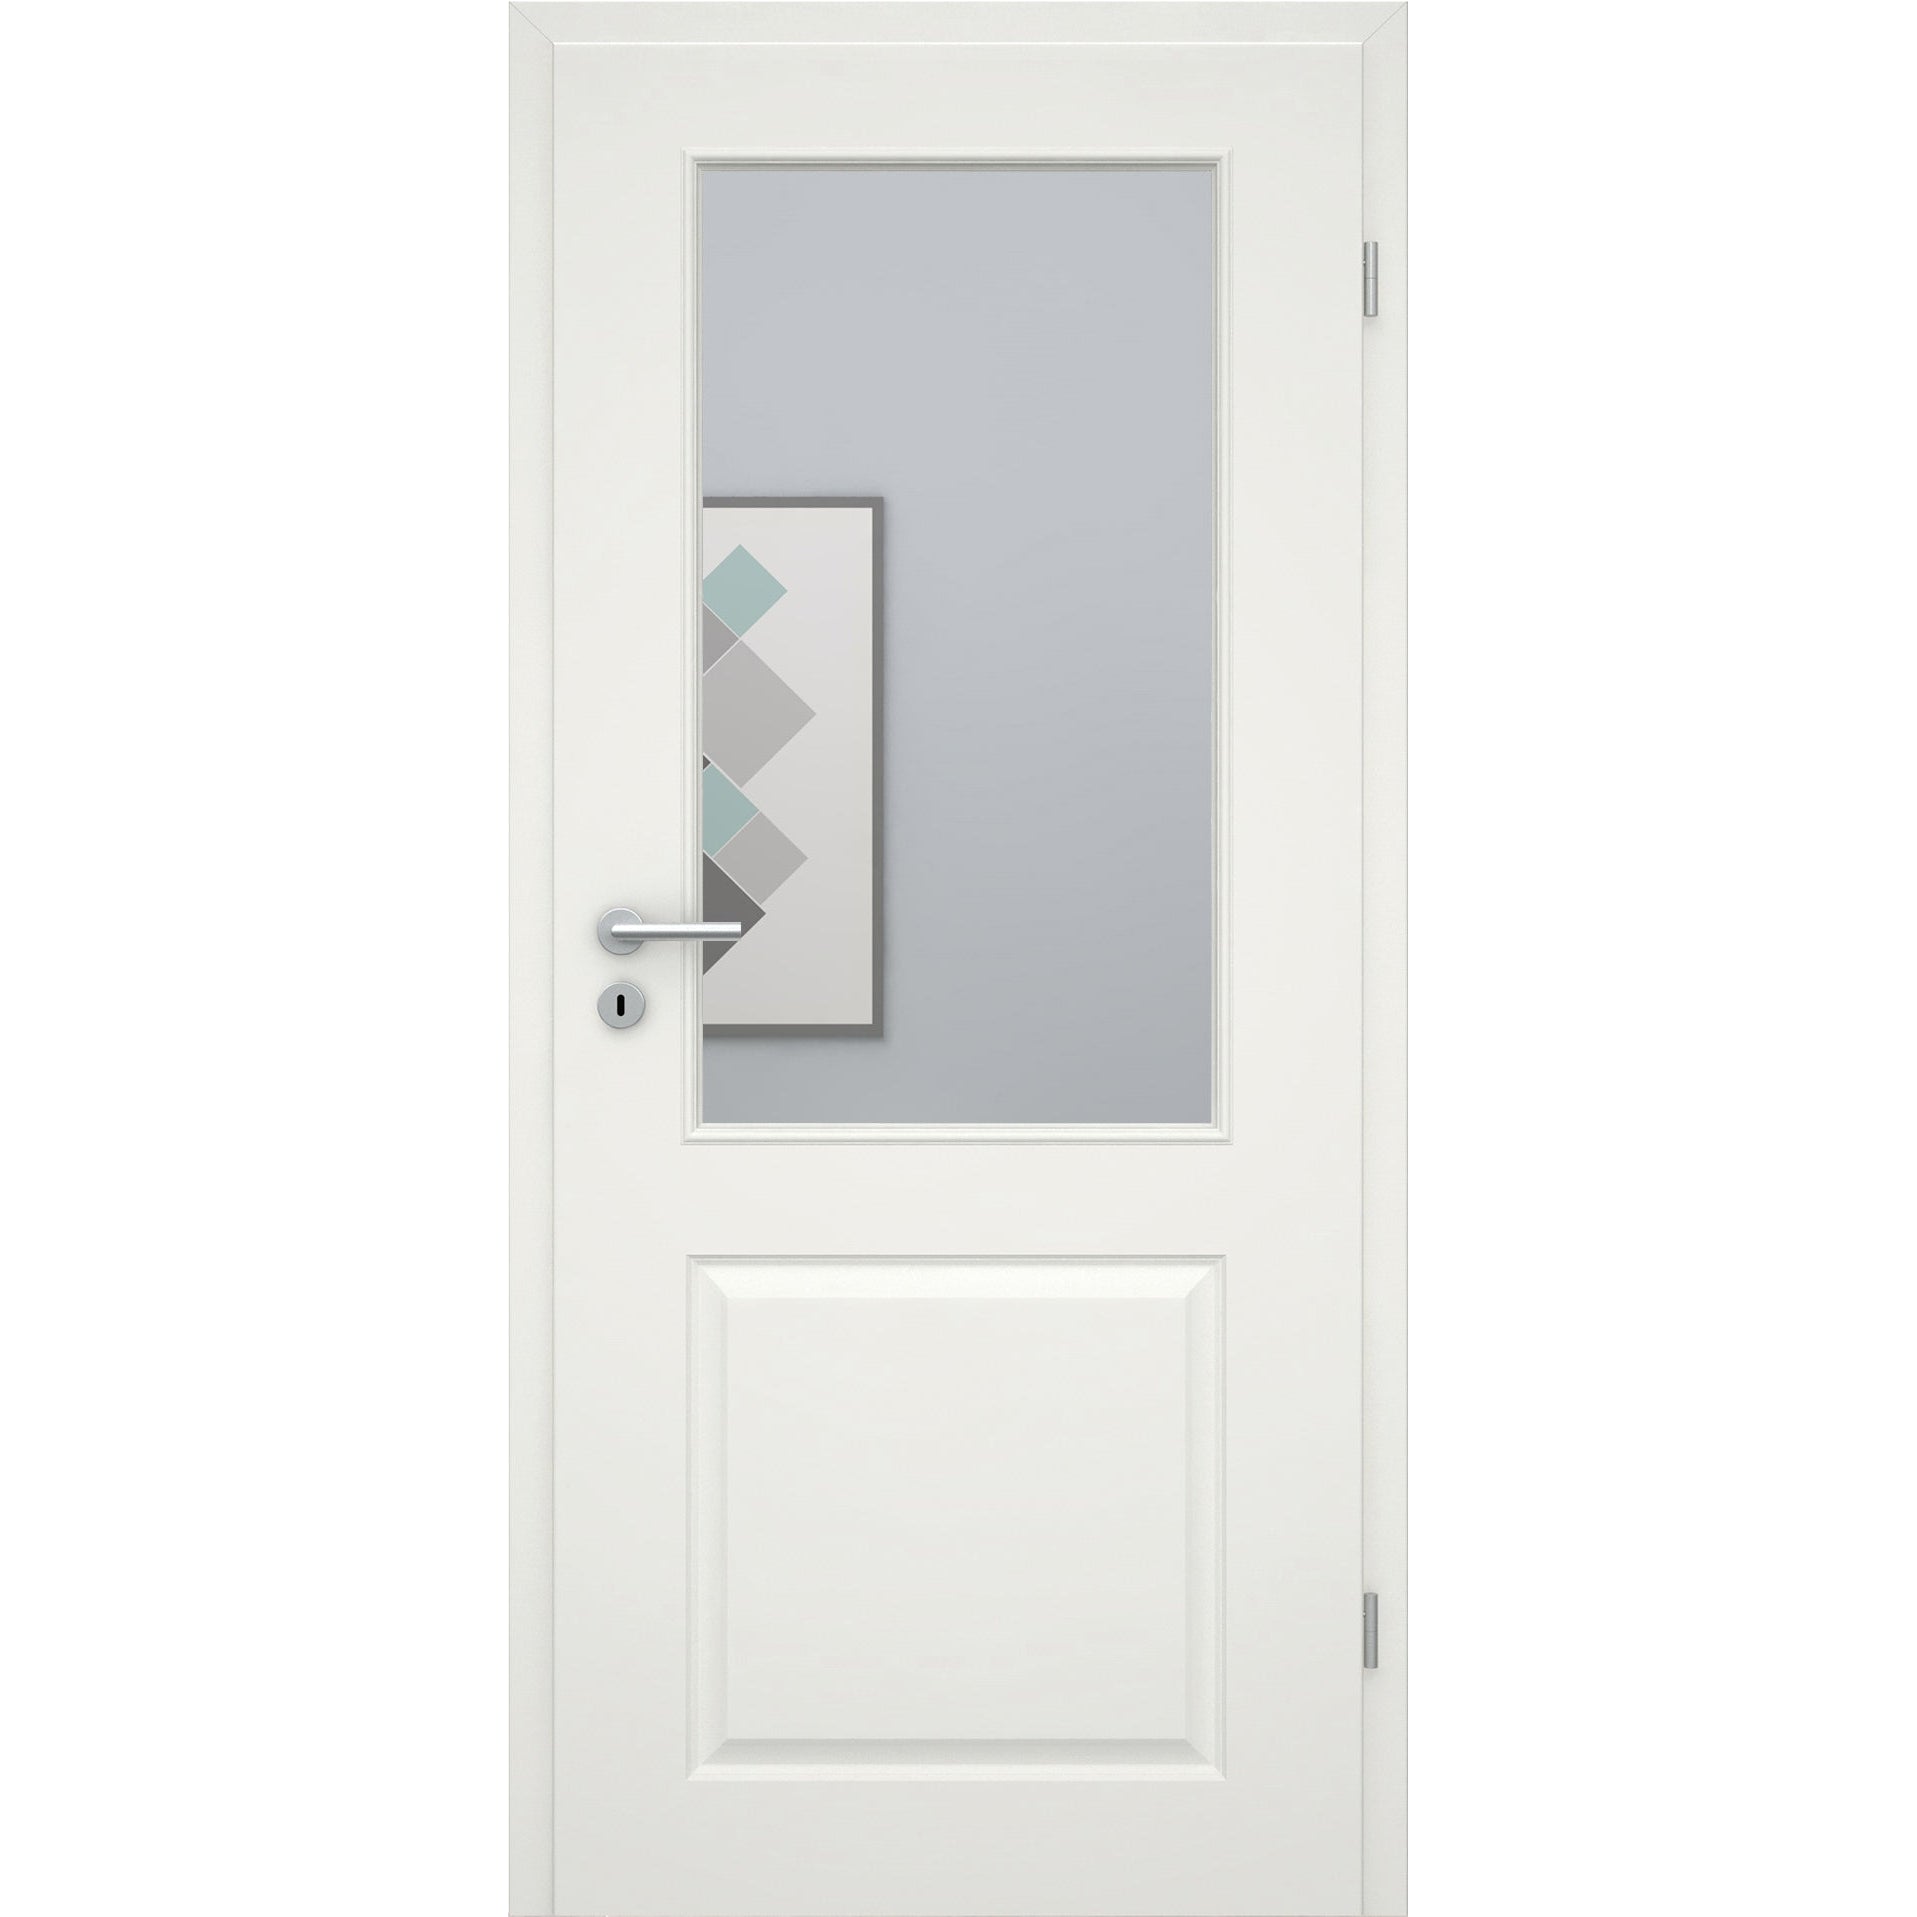 Zimmertür soft-weiß Stiltür mit 2 Kassetten und Lichtausschnitt Eckkante - Modell Stiltür K21LA